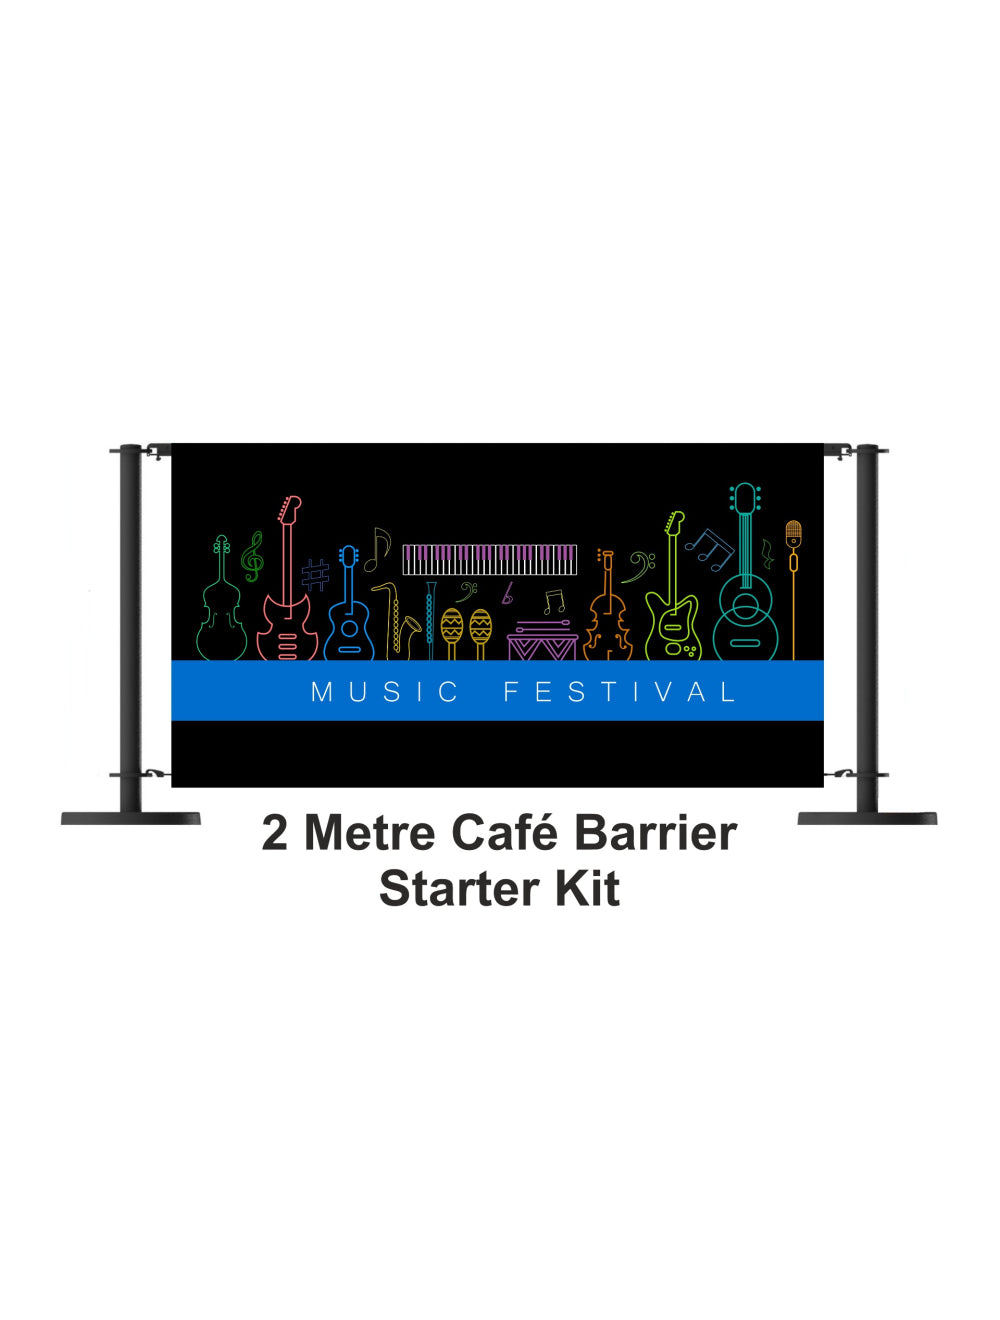 Стартовый комплект барьера для кафе длиной 2 метра